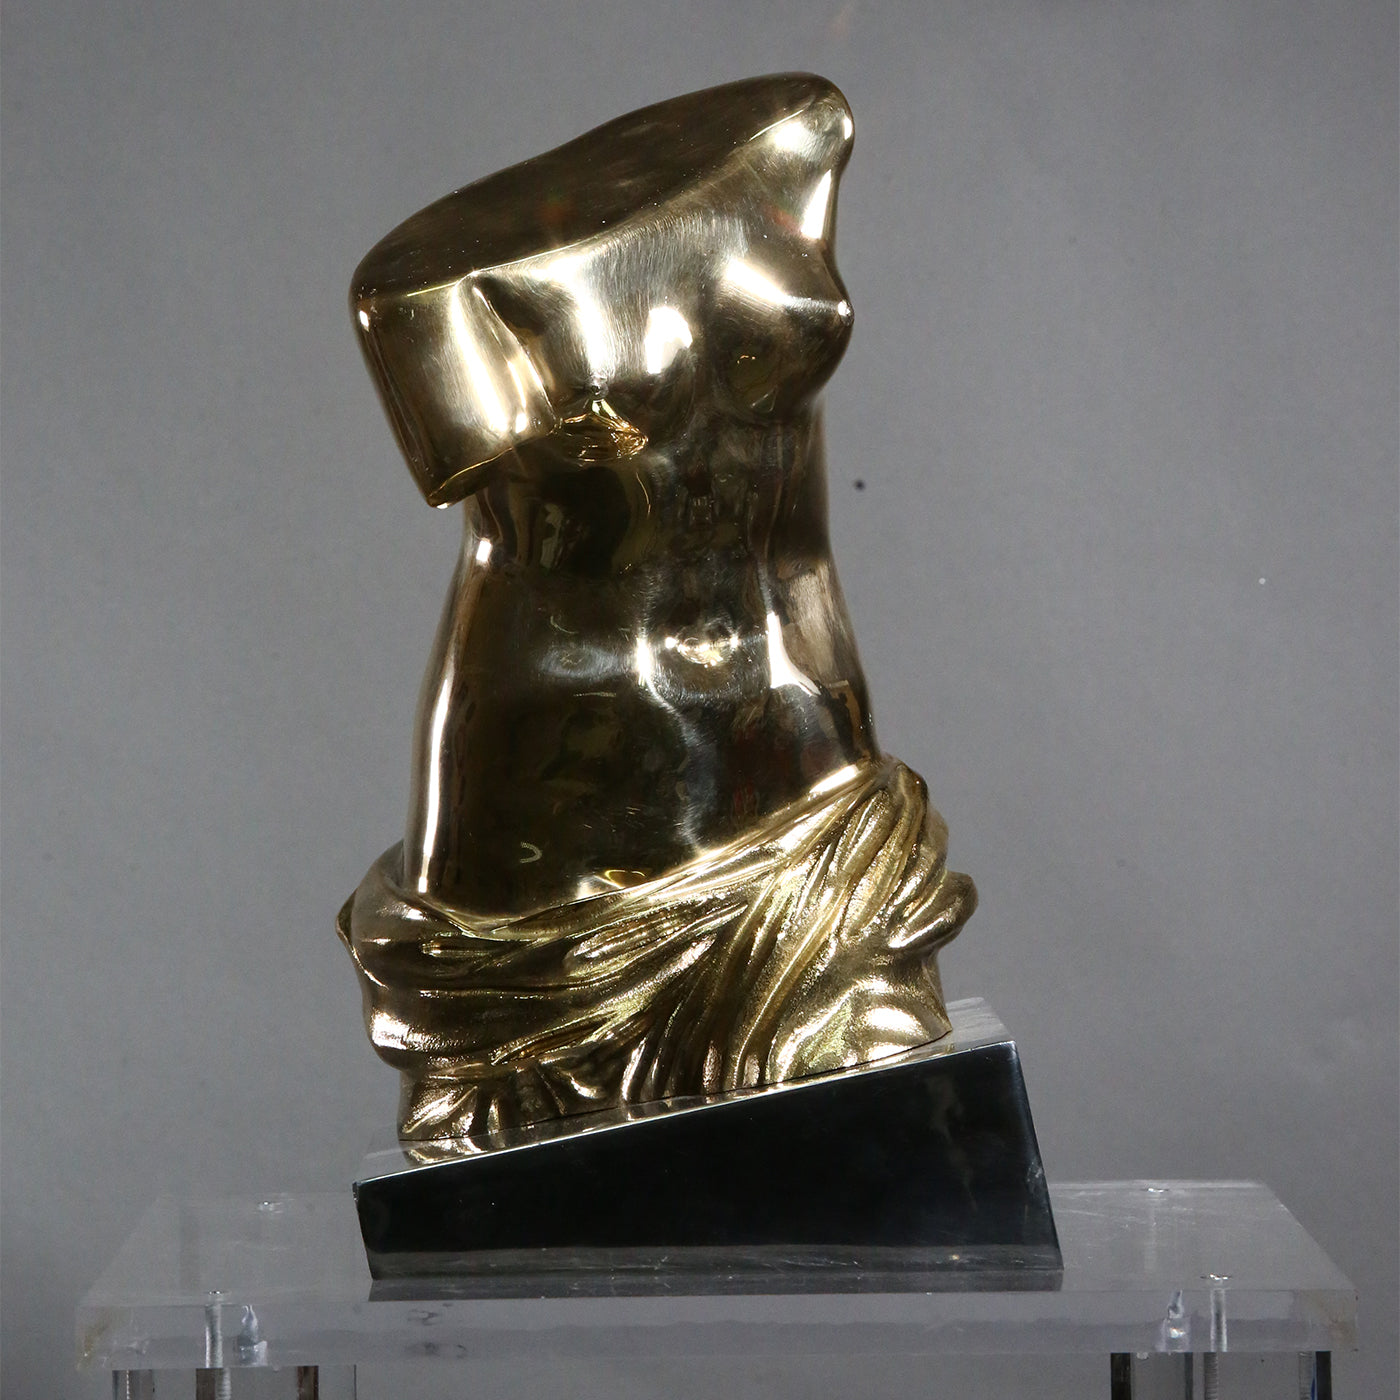 Dorso Venere di Milo moderno bronze Statuette - Vue alternative 1